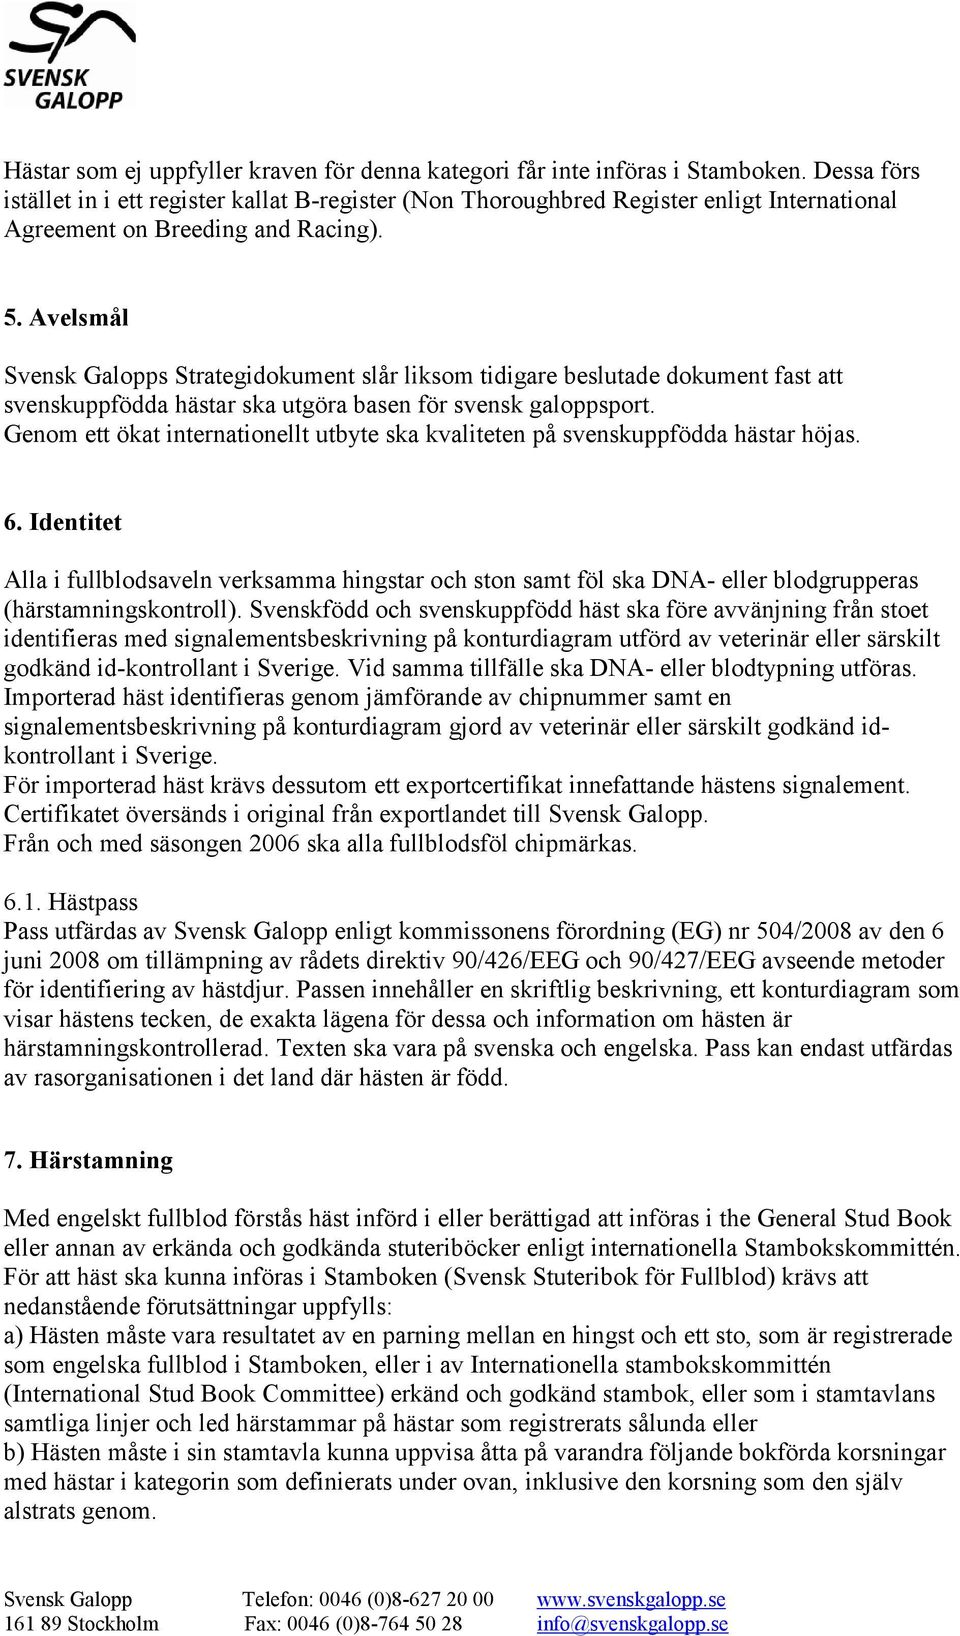 Avelsmål Svensk Galopps Strategidokument slår liksom tidigare beslutade dokument fast att svenskuppfödda hästar ska utgöra basen för svensk galoppsport.